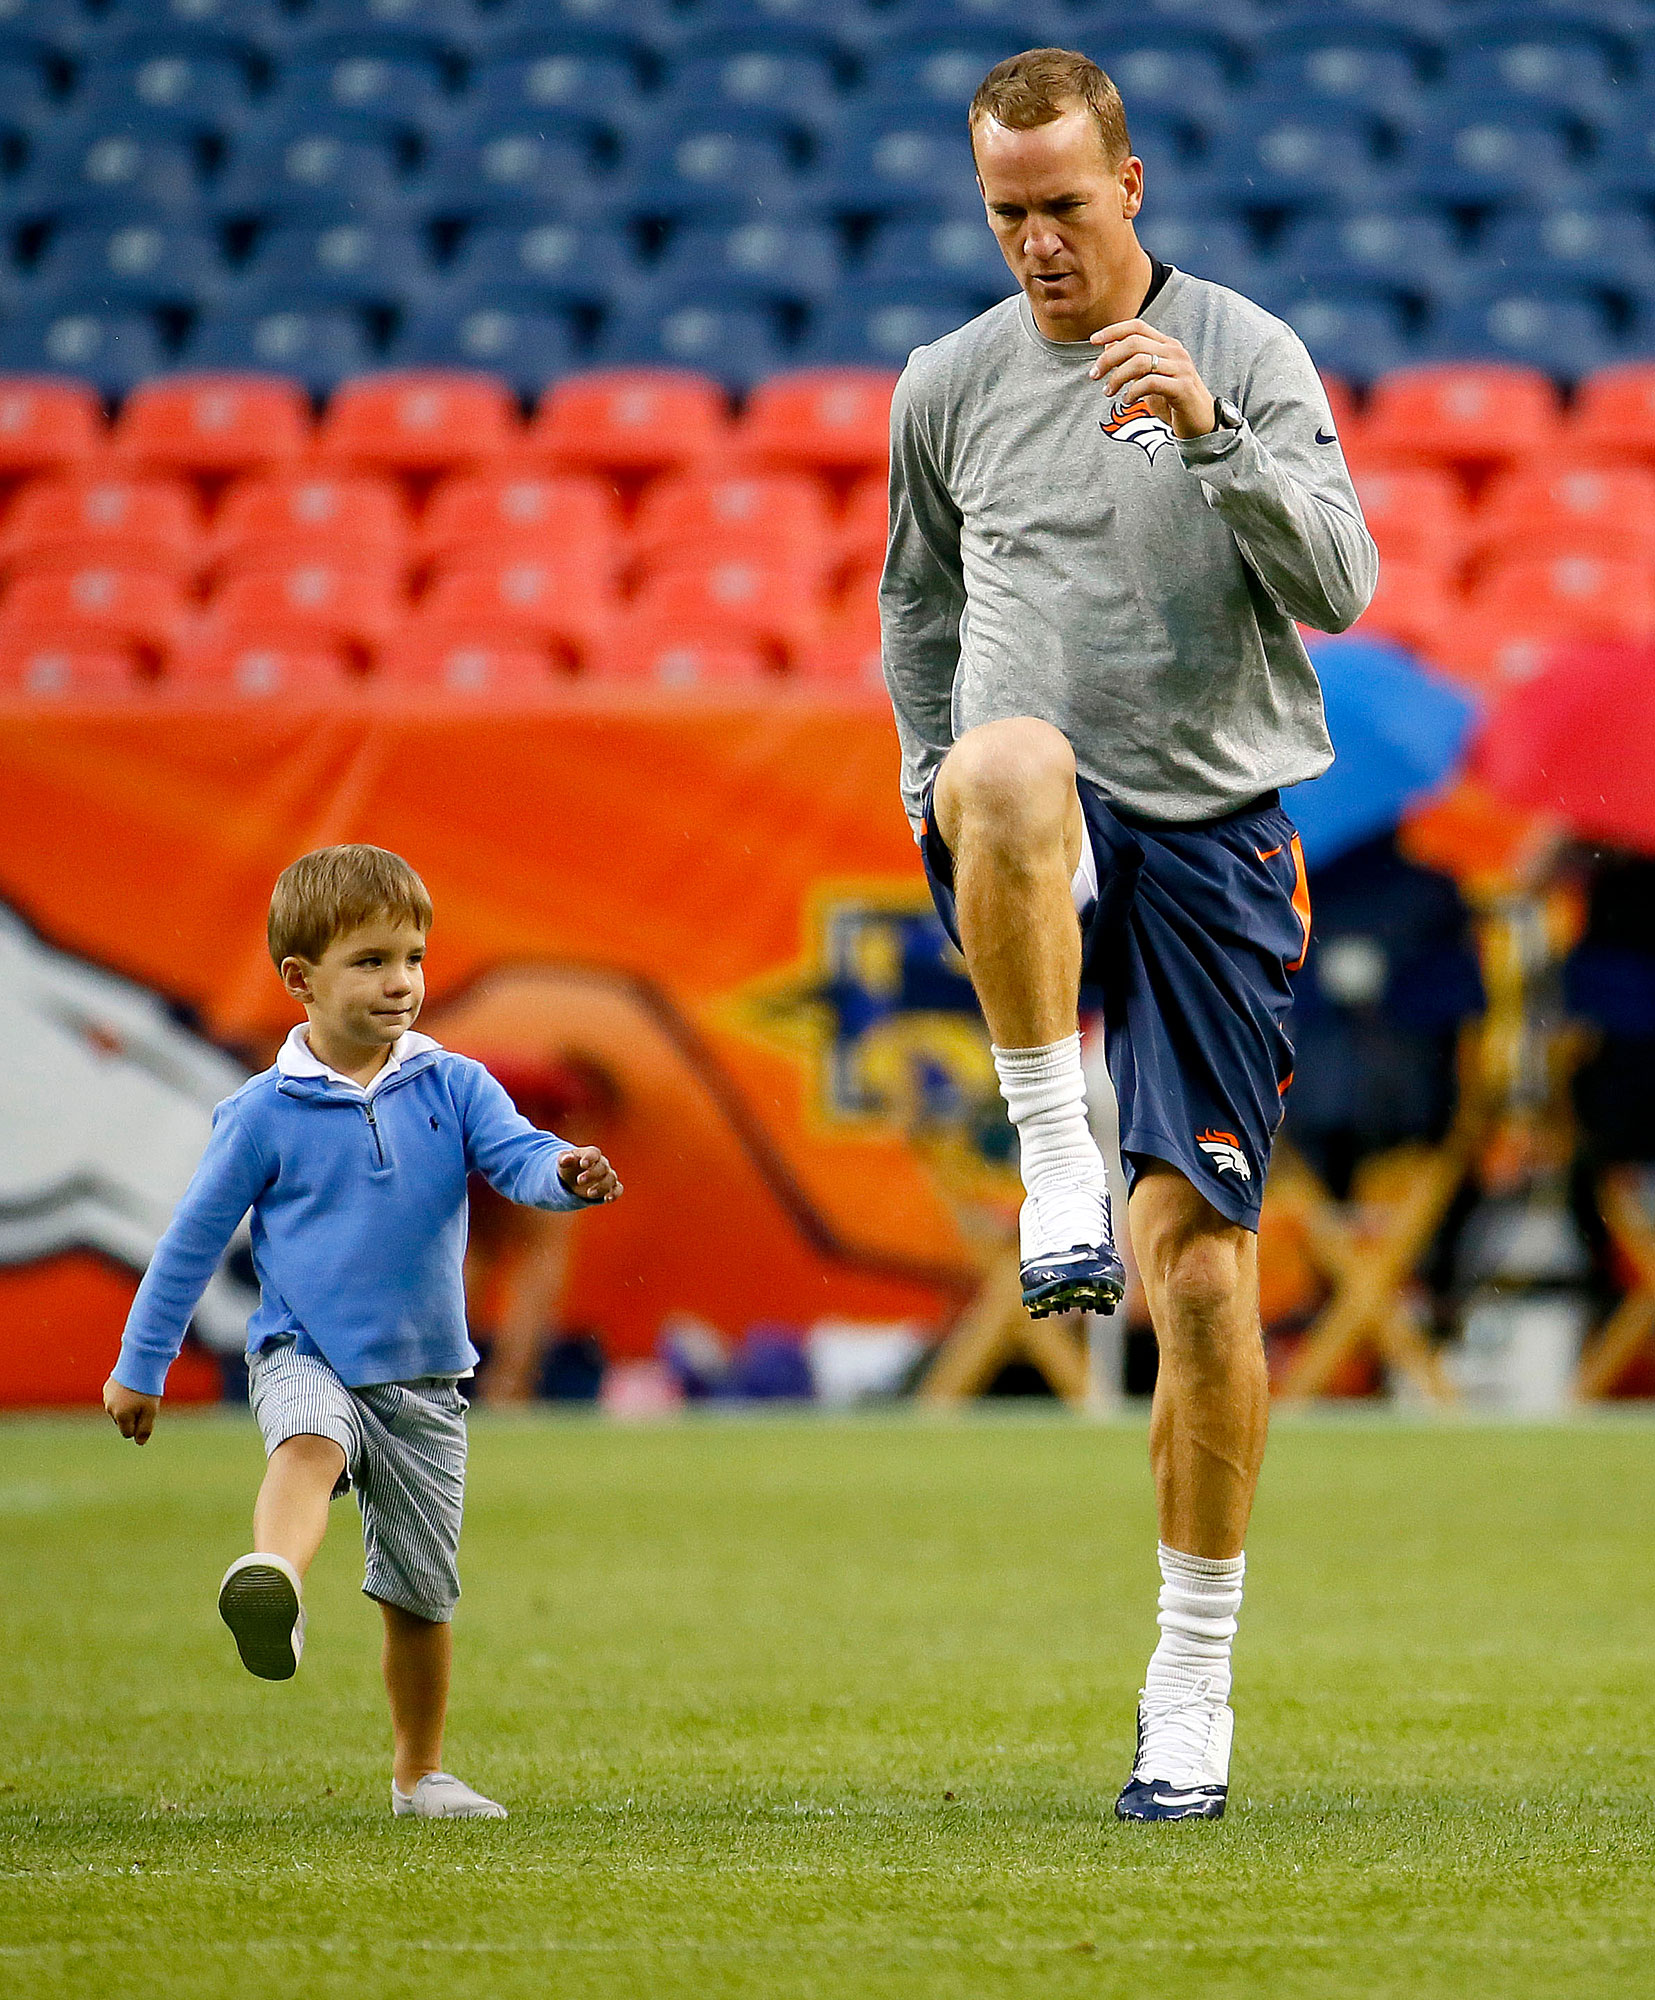 Eli, Peyton Manning's Rare Photos With Kids: Family Album